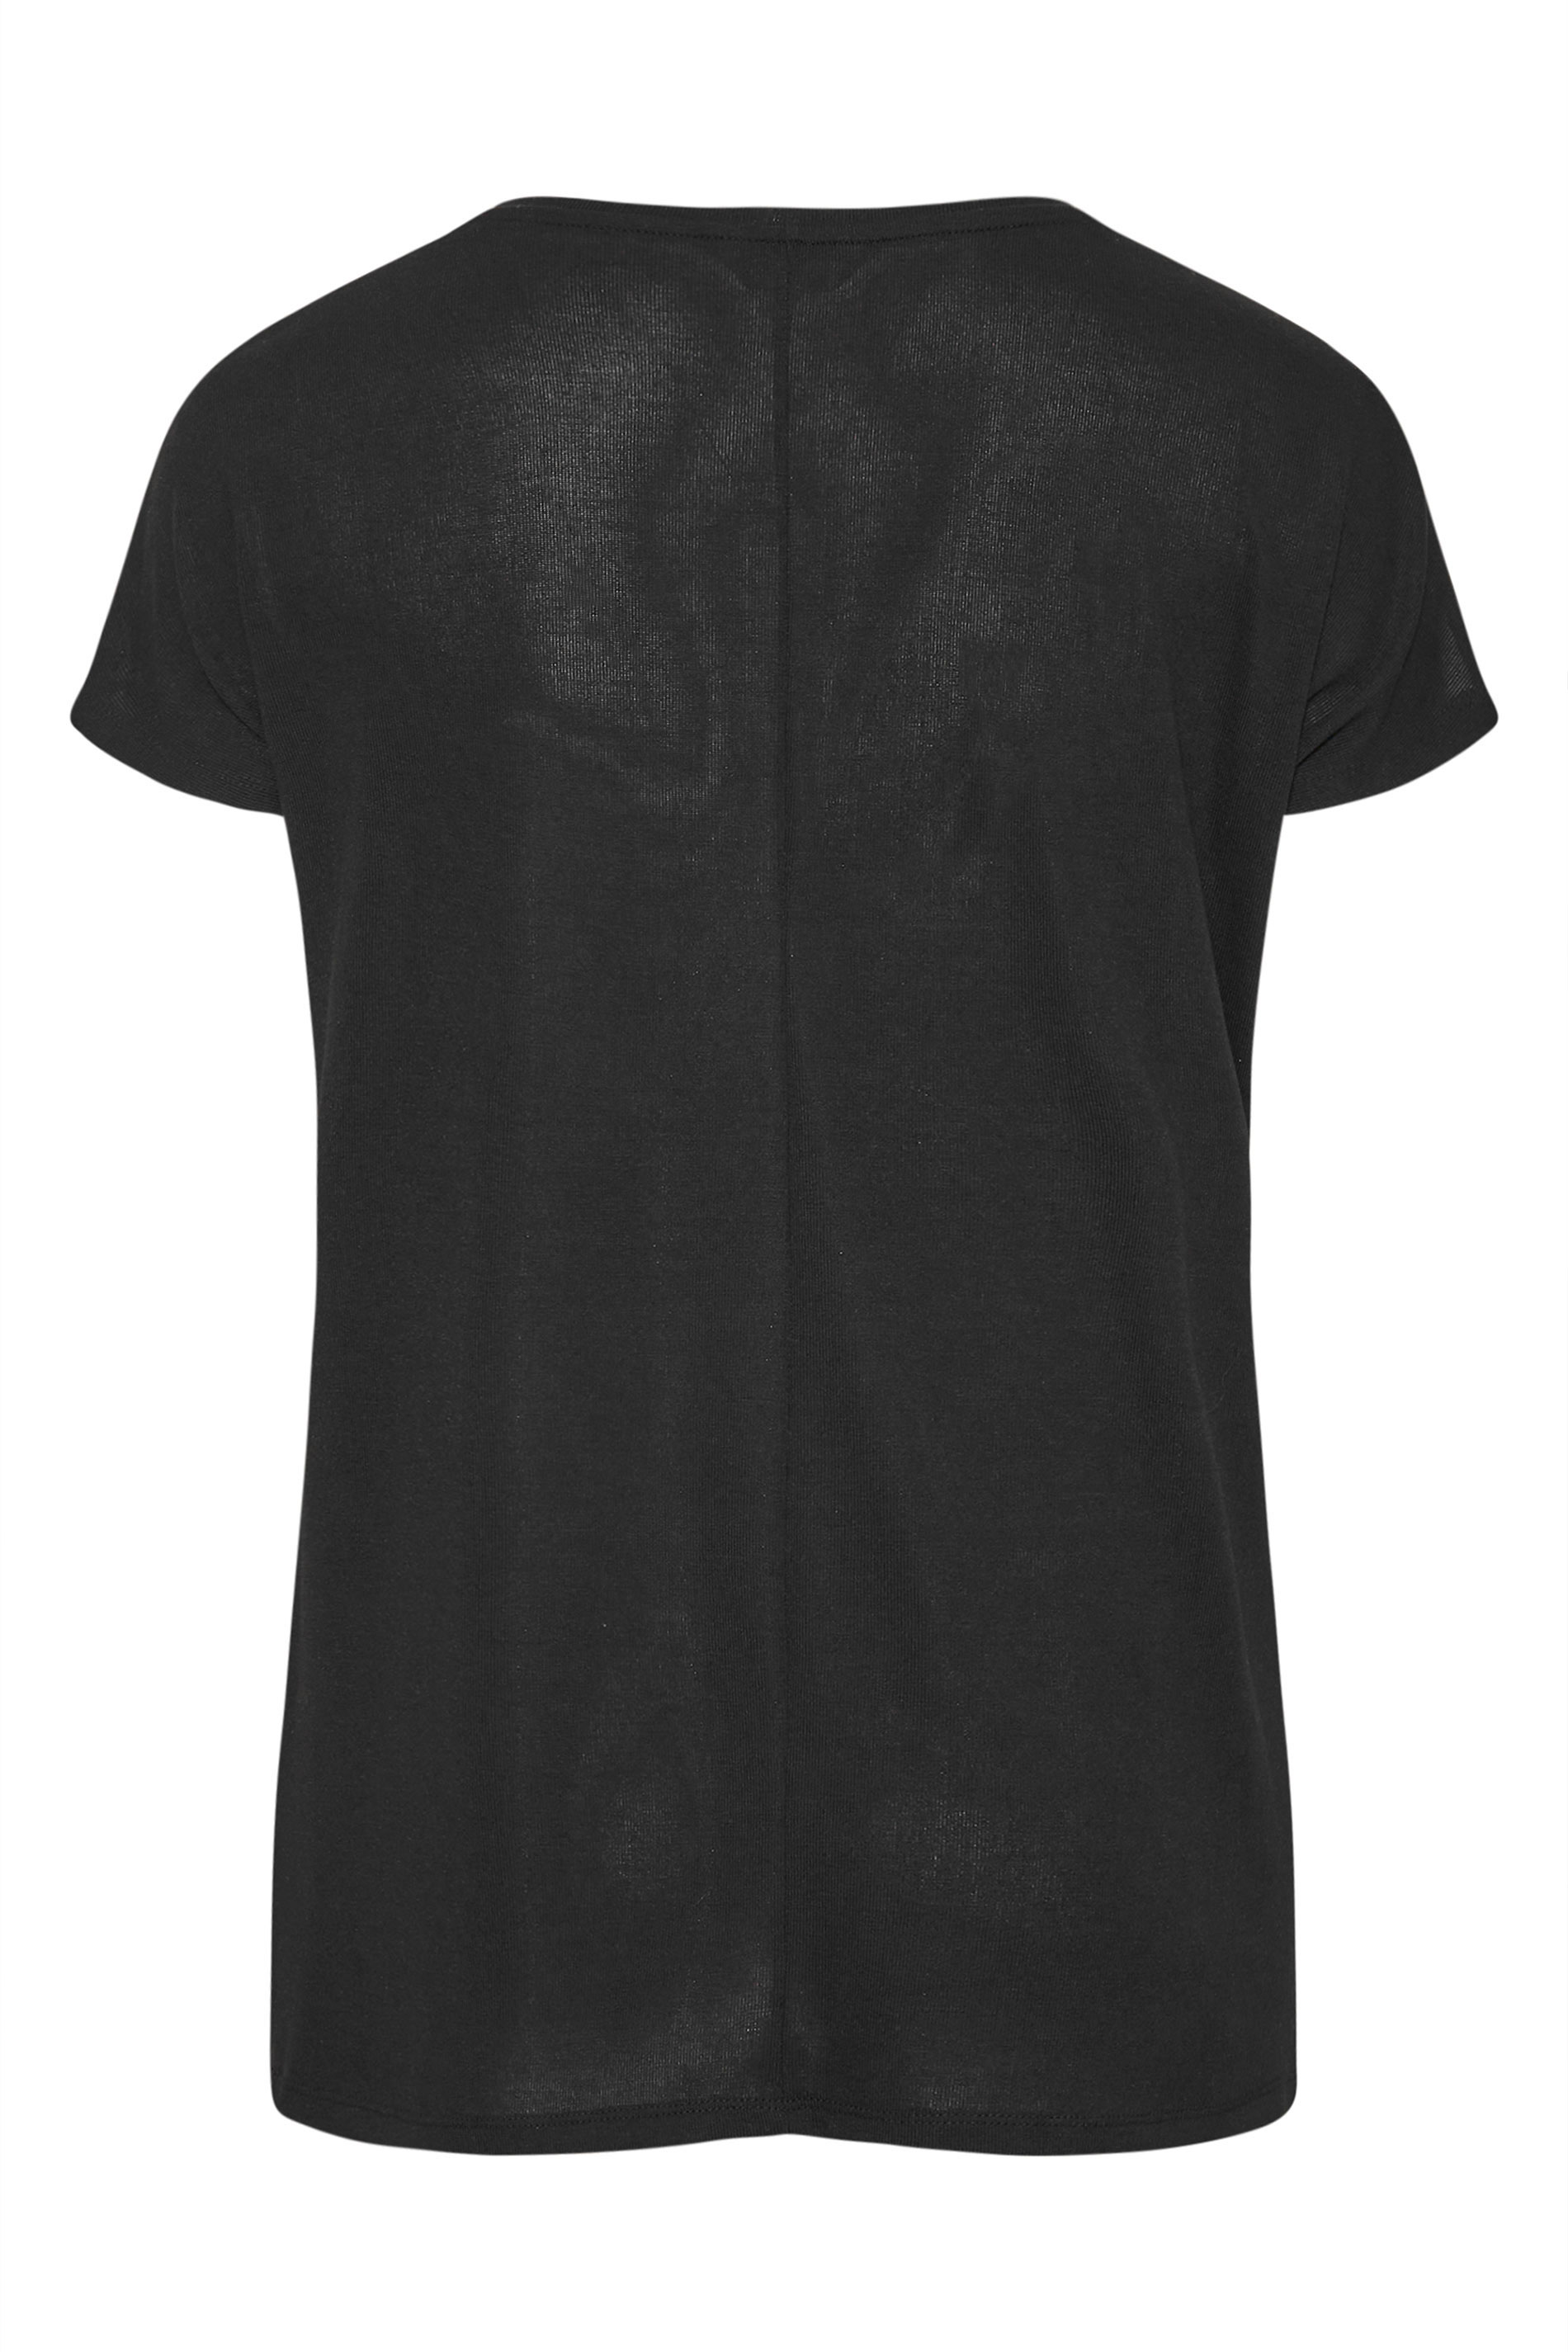 Grande taille  Tops Grande taille  Tops Casual | T-Shirt Gris Block de Couleur en Jersey - JW74170